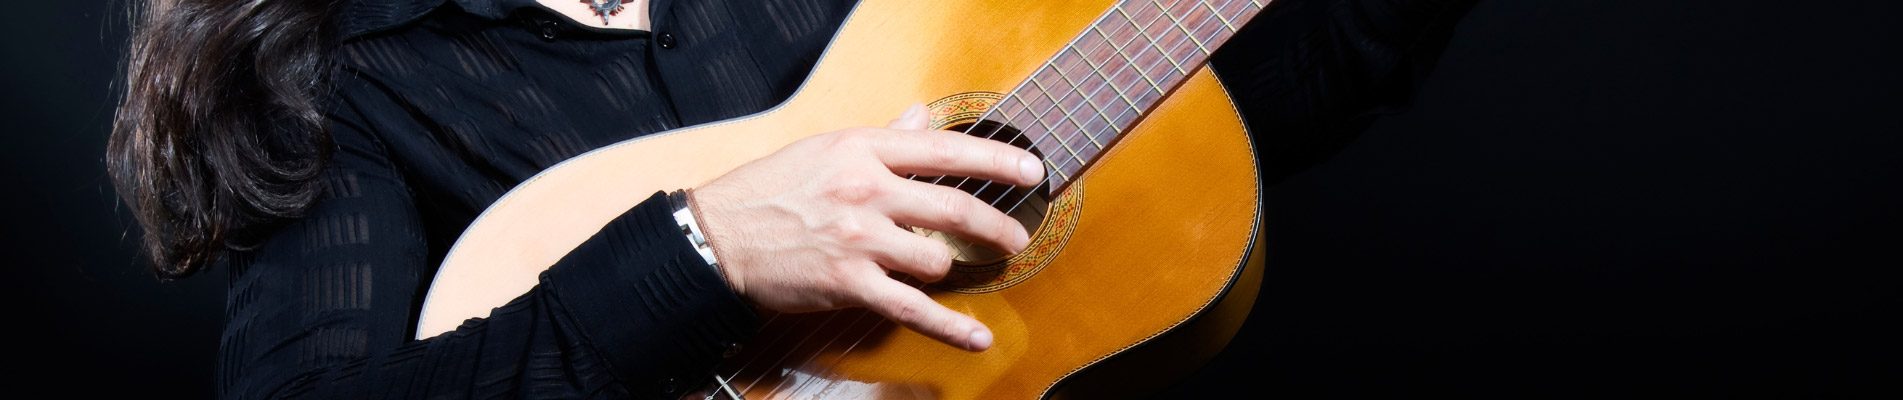 technique guitare flamenco